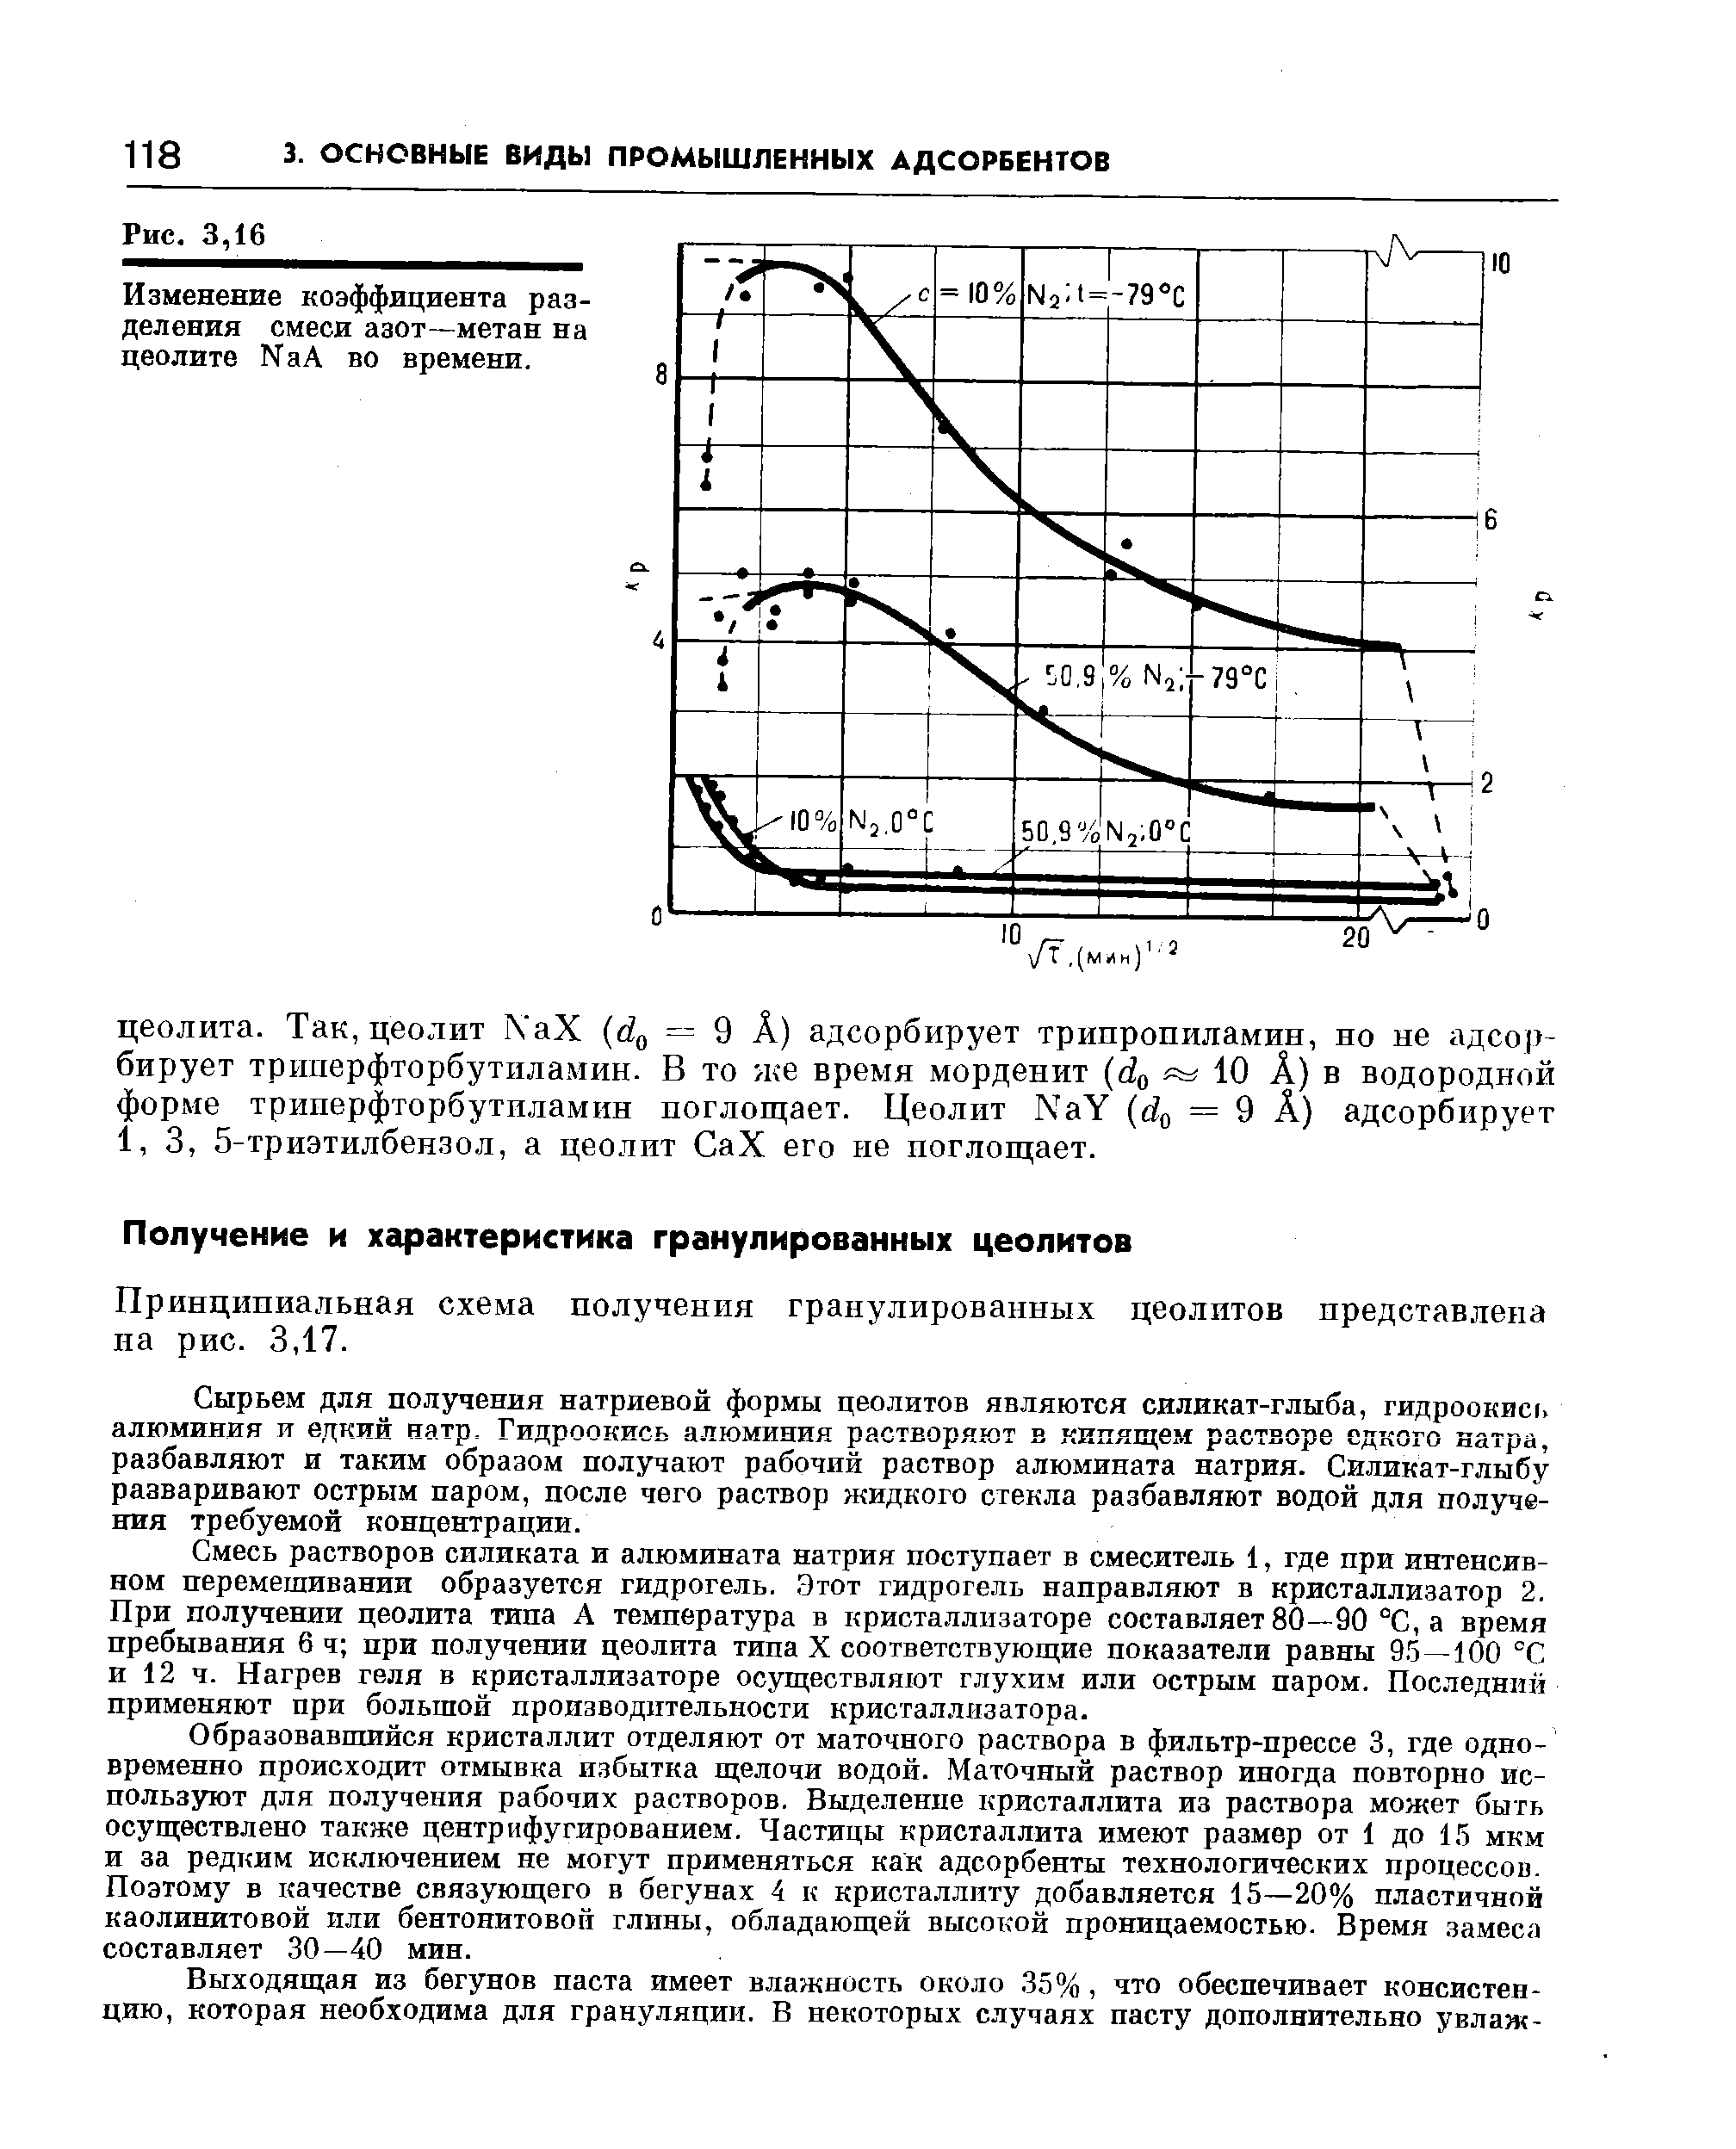 Принципиальная схема получения гранулированных цеолитов представлена на рис. 3,17.